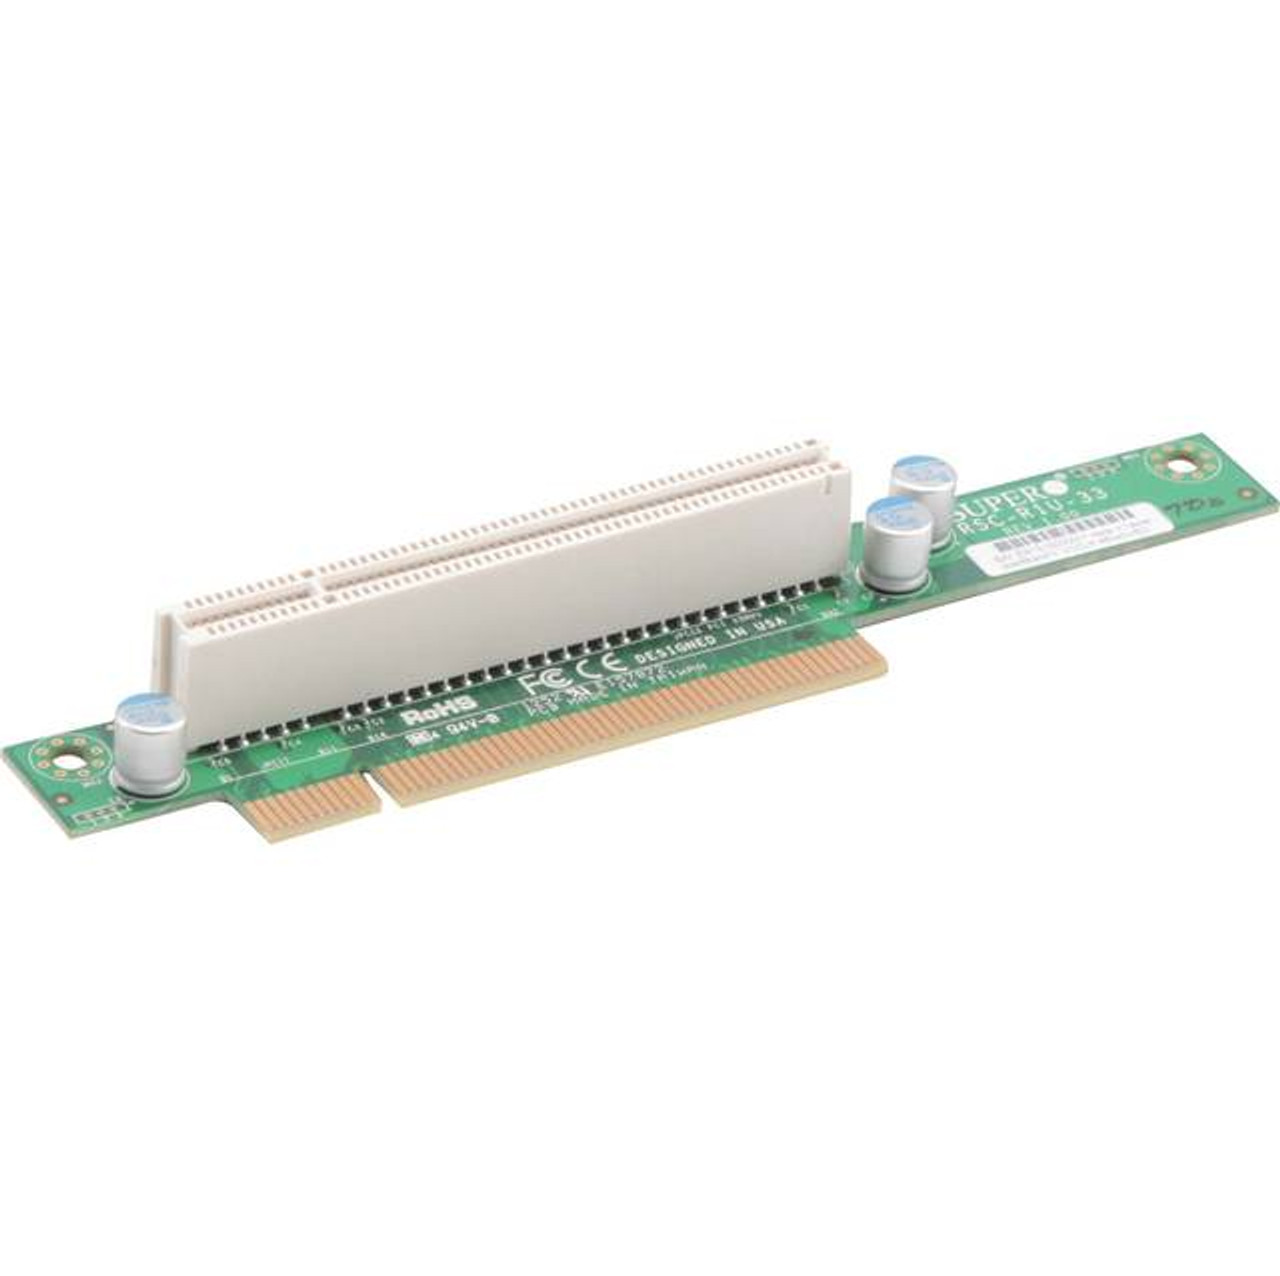 Supermicro RSC-R1U-33 1U PCI Riser Card